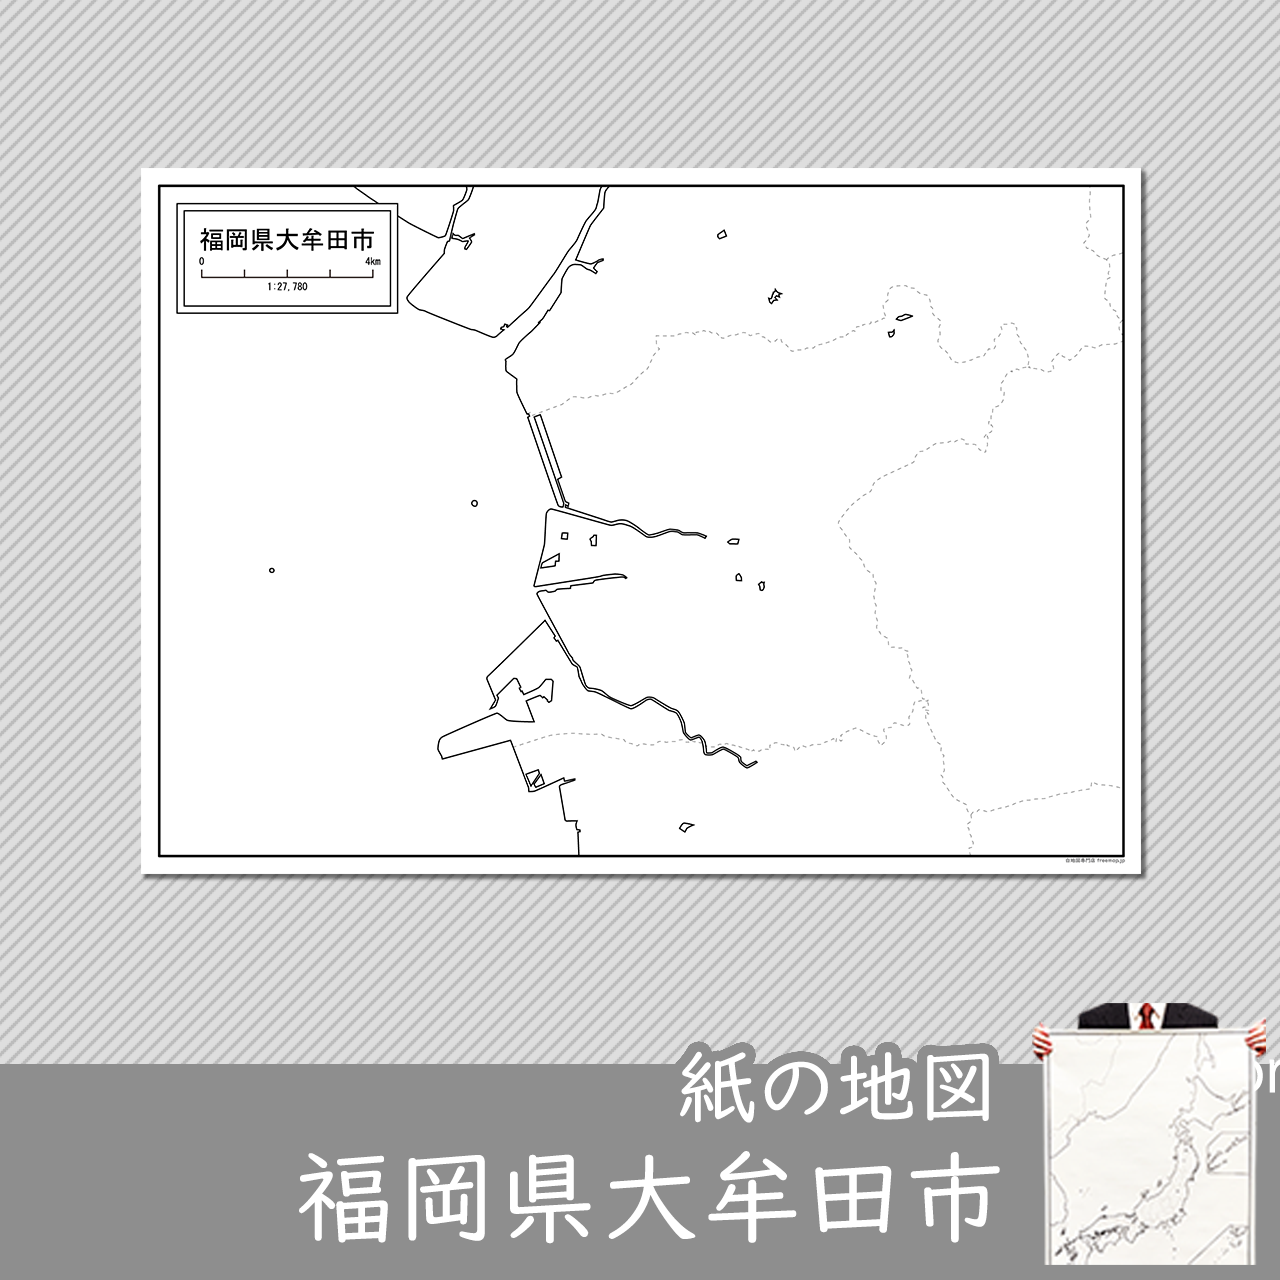 大牟田市の紙の白地図のサムネイル